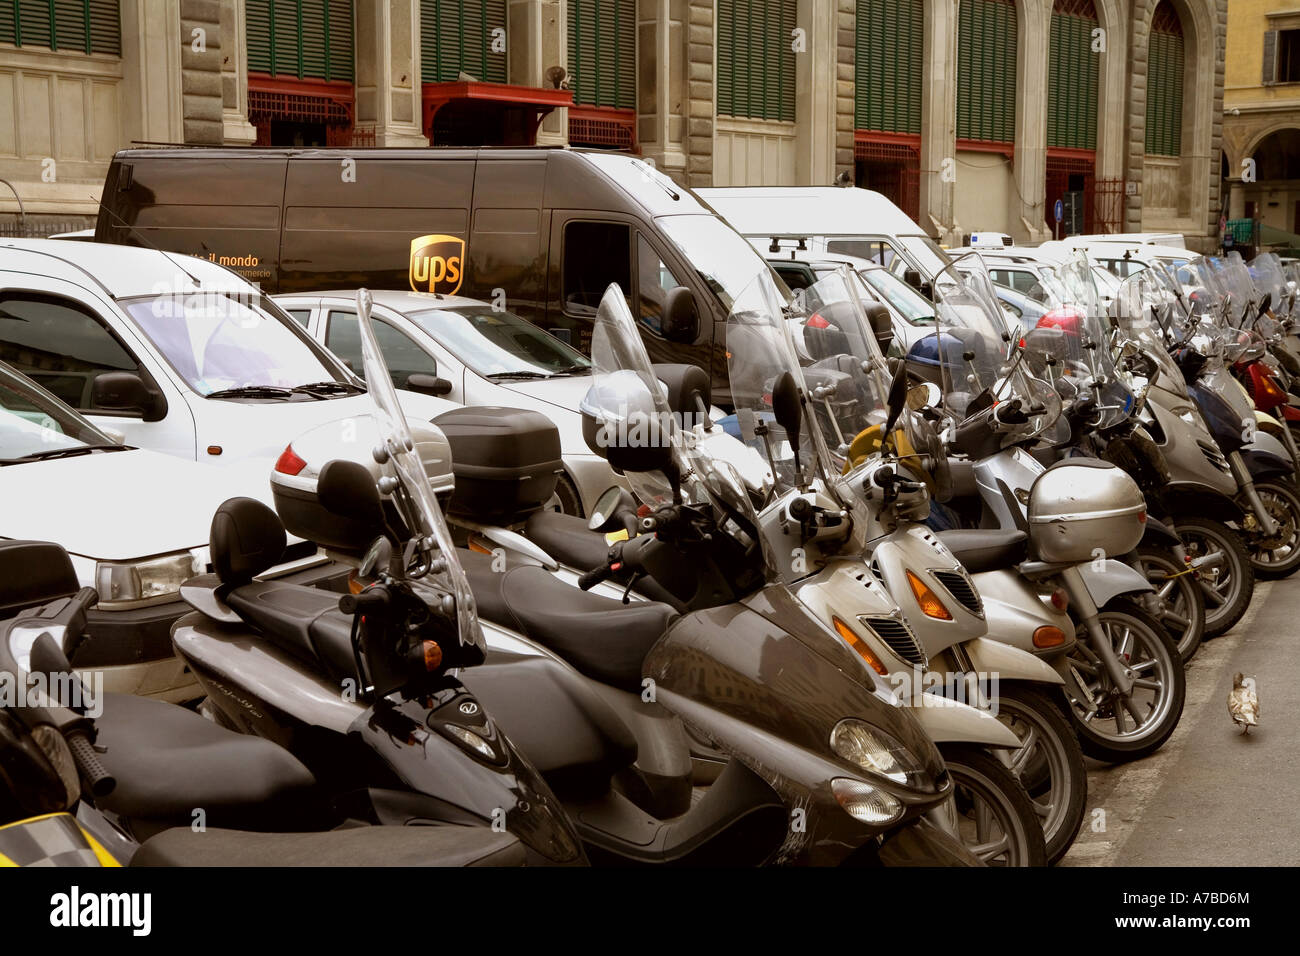 Camion de livraison d'UPS s'étire sur place parking entre les motos en stationnement en Florence Italie Banque D'Images